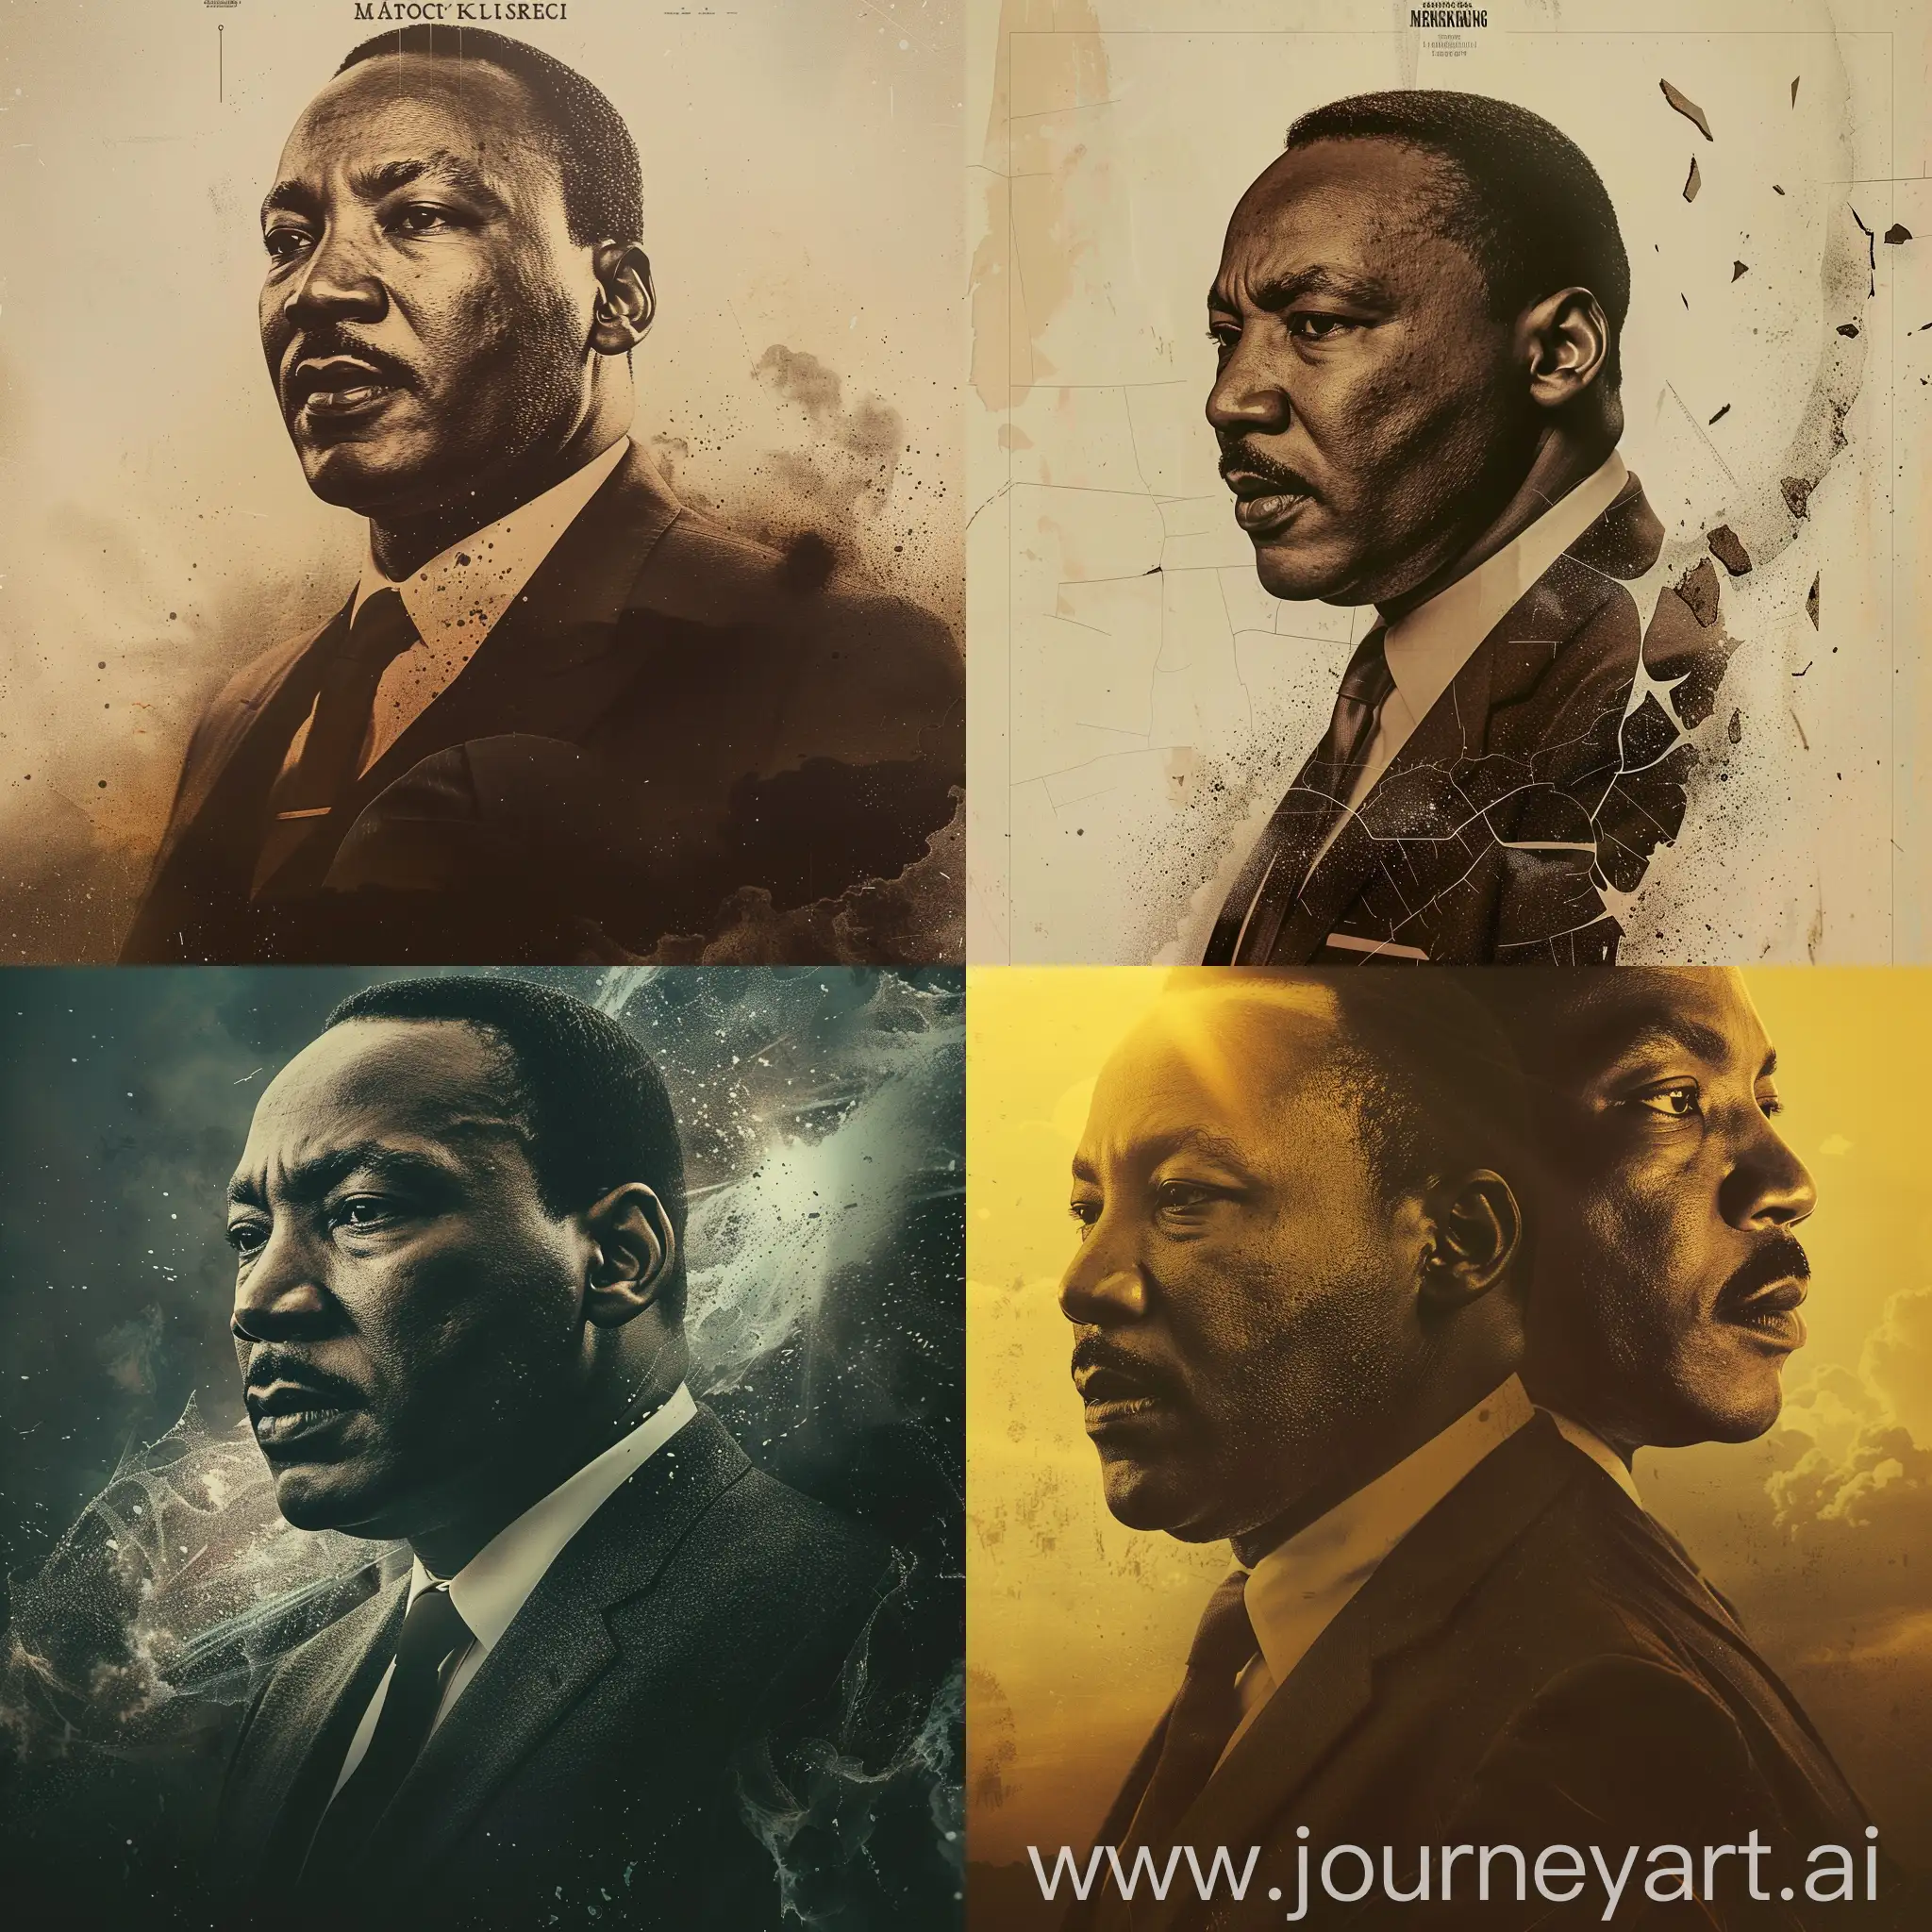 Постер фильма про Мартина Лютера Кинга. Но Лютер Кинг должен быть былым